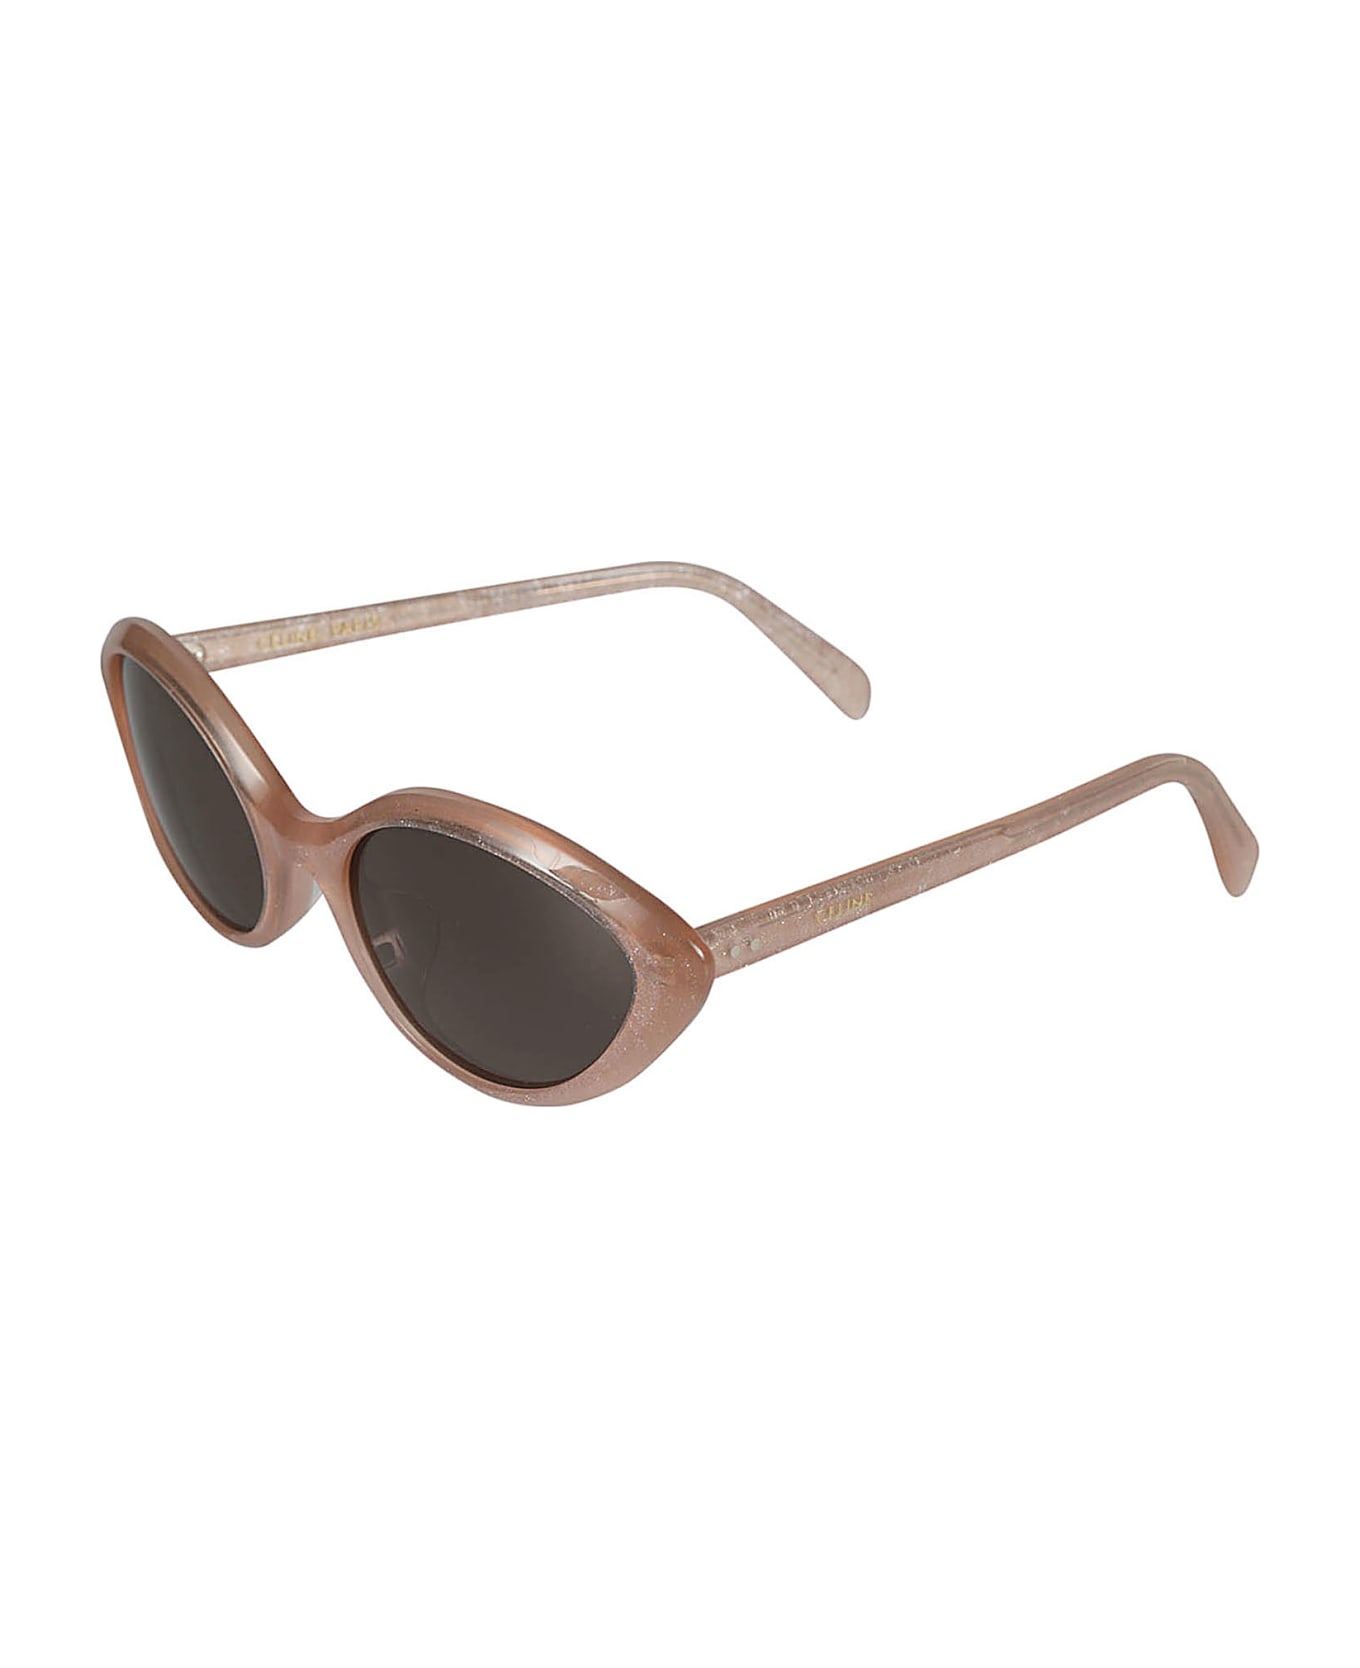 Celine Embellished Cat-eye Sunglasses - 74n